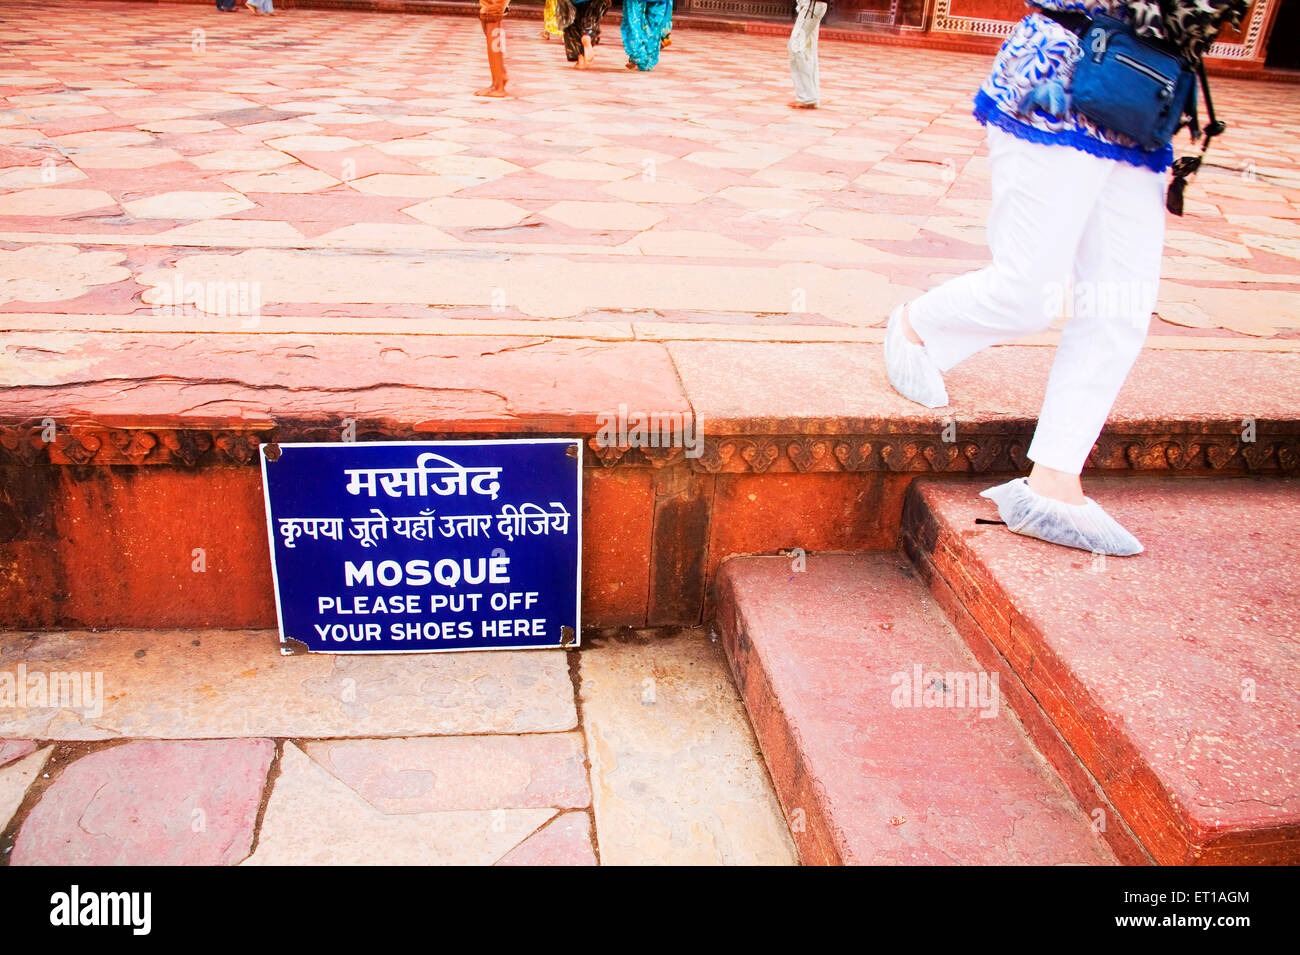 Le port touristique couverture blanche sur ses chaussures marche sur le sable rouge de la pierre près de la mosquée d'administration à signer , Taj Mahal, Agra, Uttar Pradesh, Inde Banque D'Images